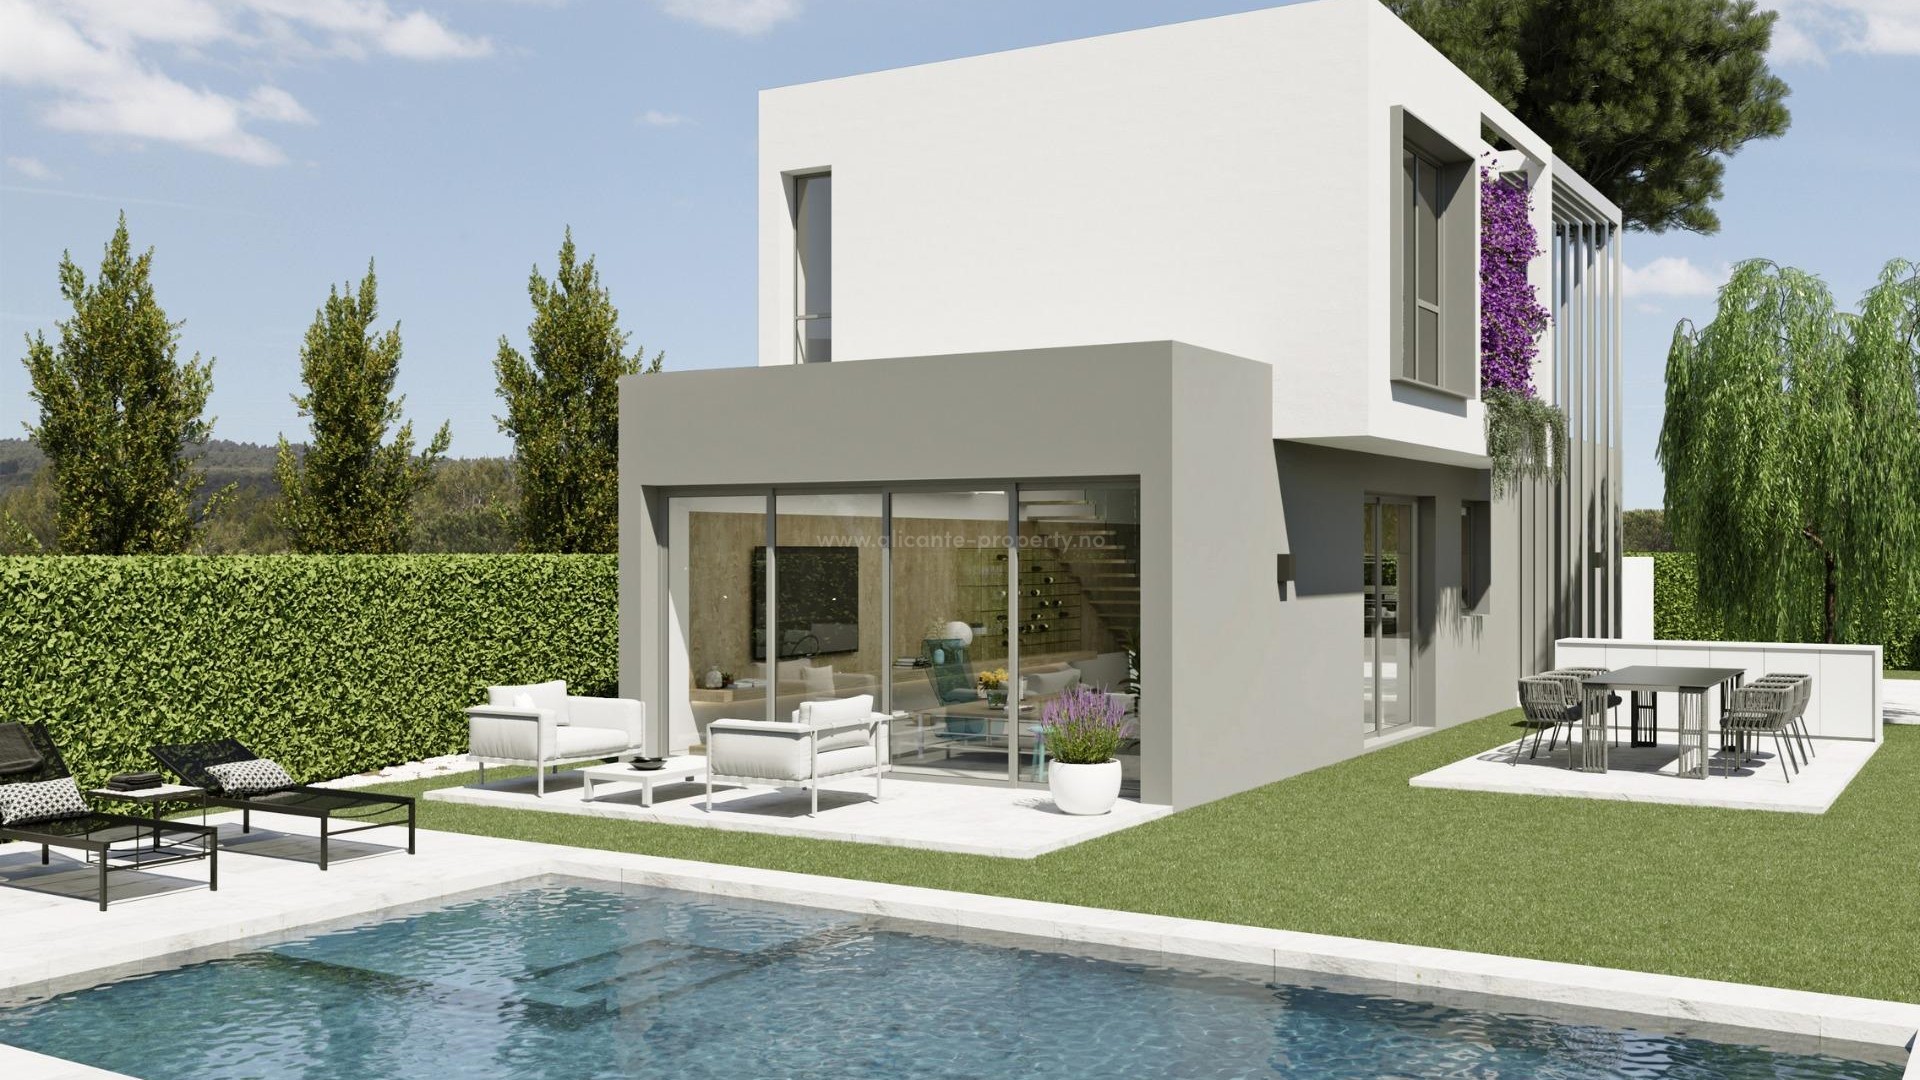 Luksus-villaer i San Juan de Alicante. 3 modeller og 21 villaer m/svømmebasseng og grøntområde.1200 meter til fantastike lange sandstrender og nær Alicante